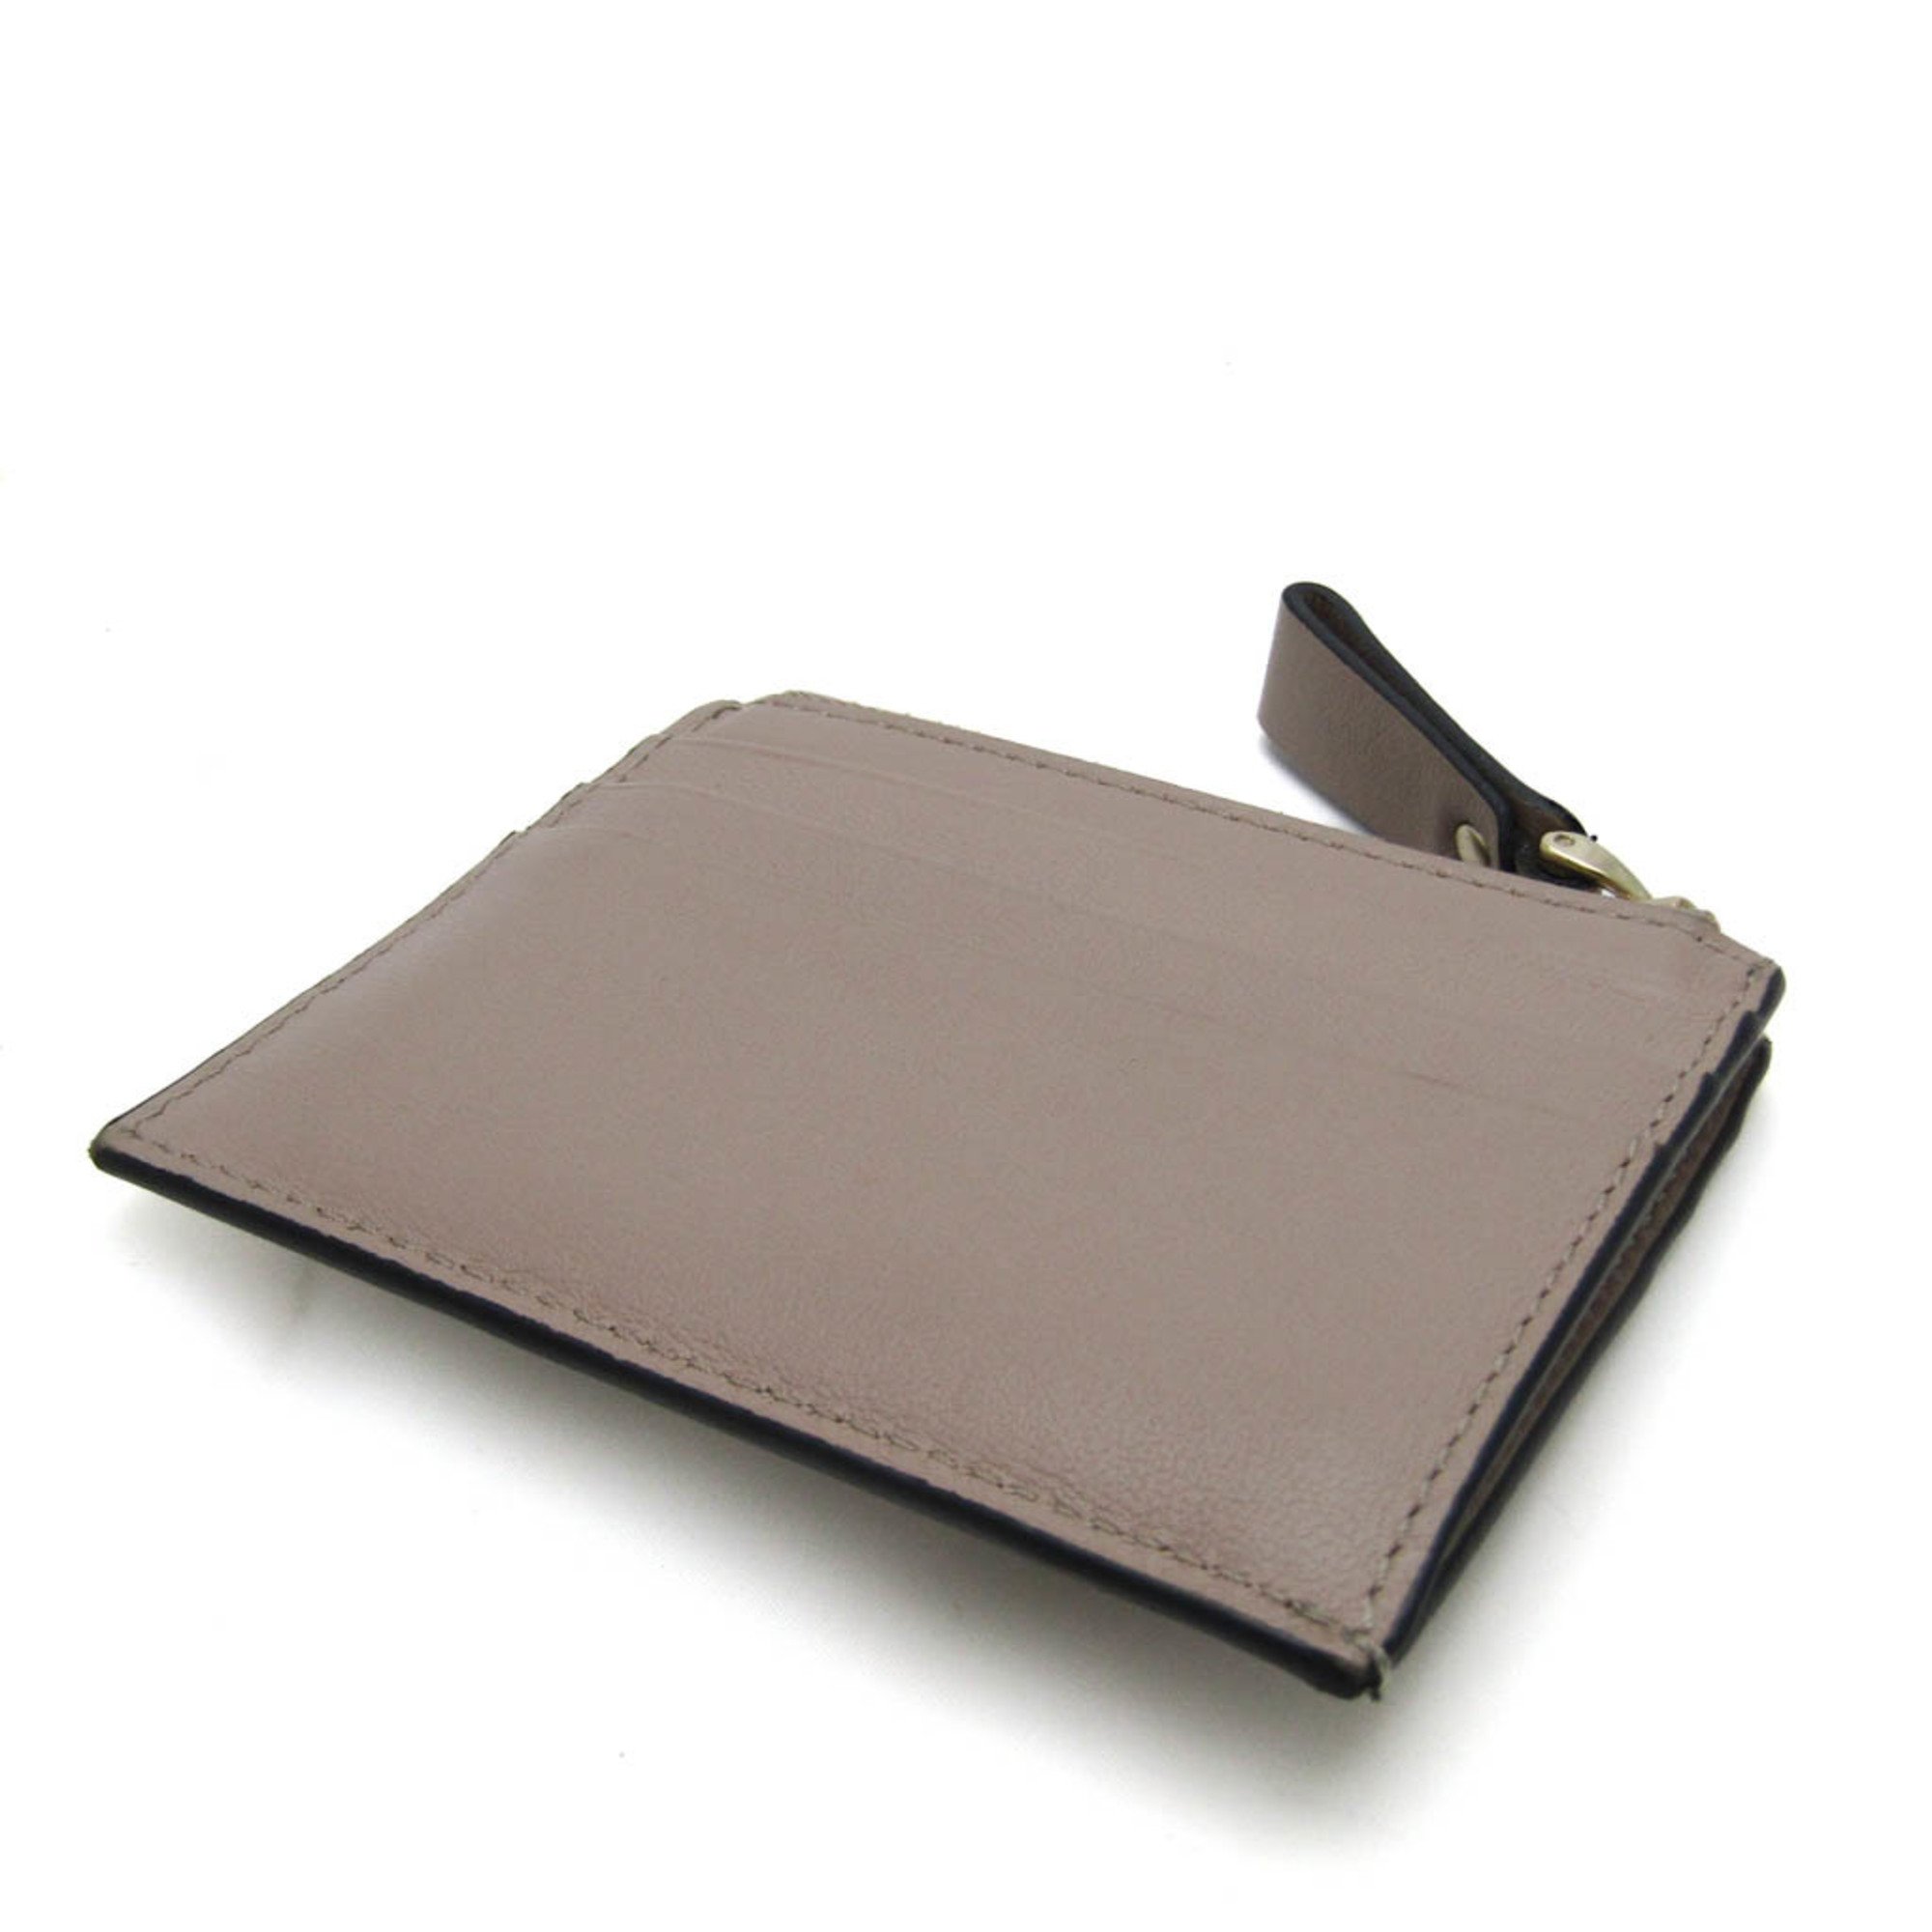 Valentino Garavani Lockstuds TW2P0T35BOL Leather Card Case Pink Beige